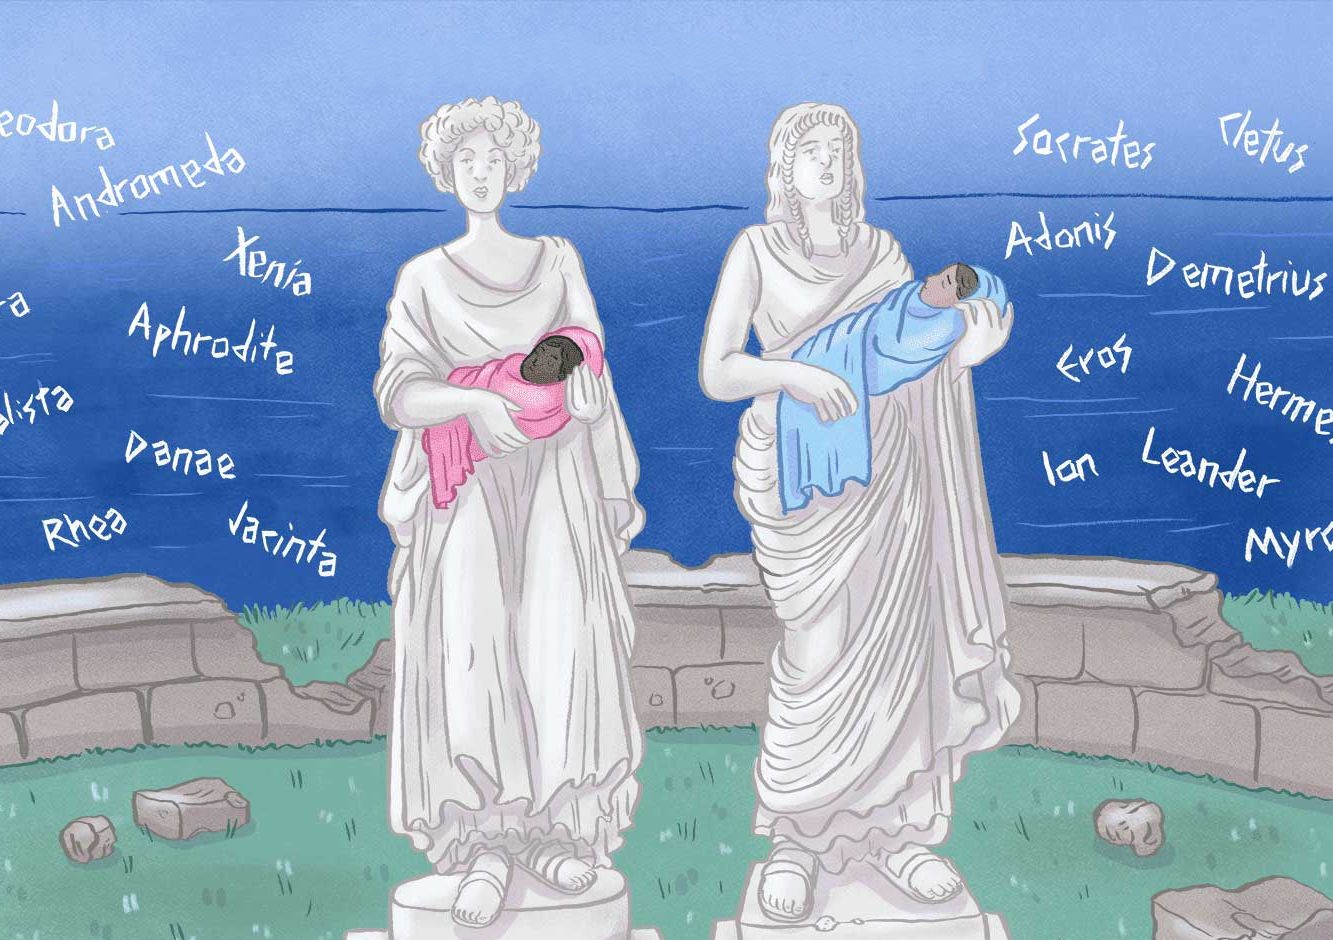 Τα πιο συχνά επώνυμα και ονόματα στην Ελλάδα και η προέλευσή τους